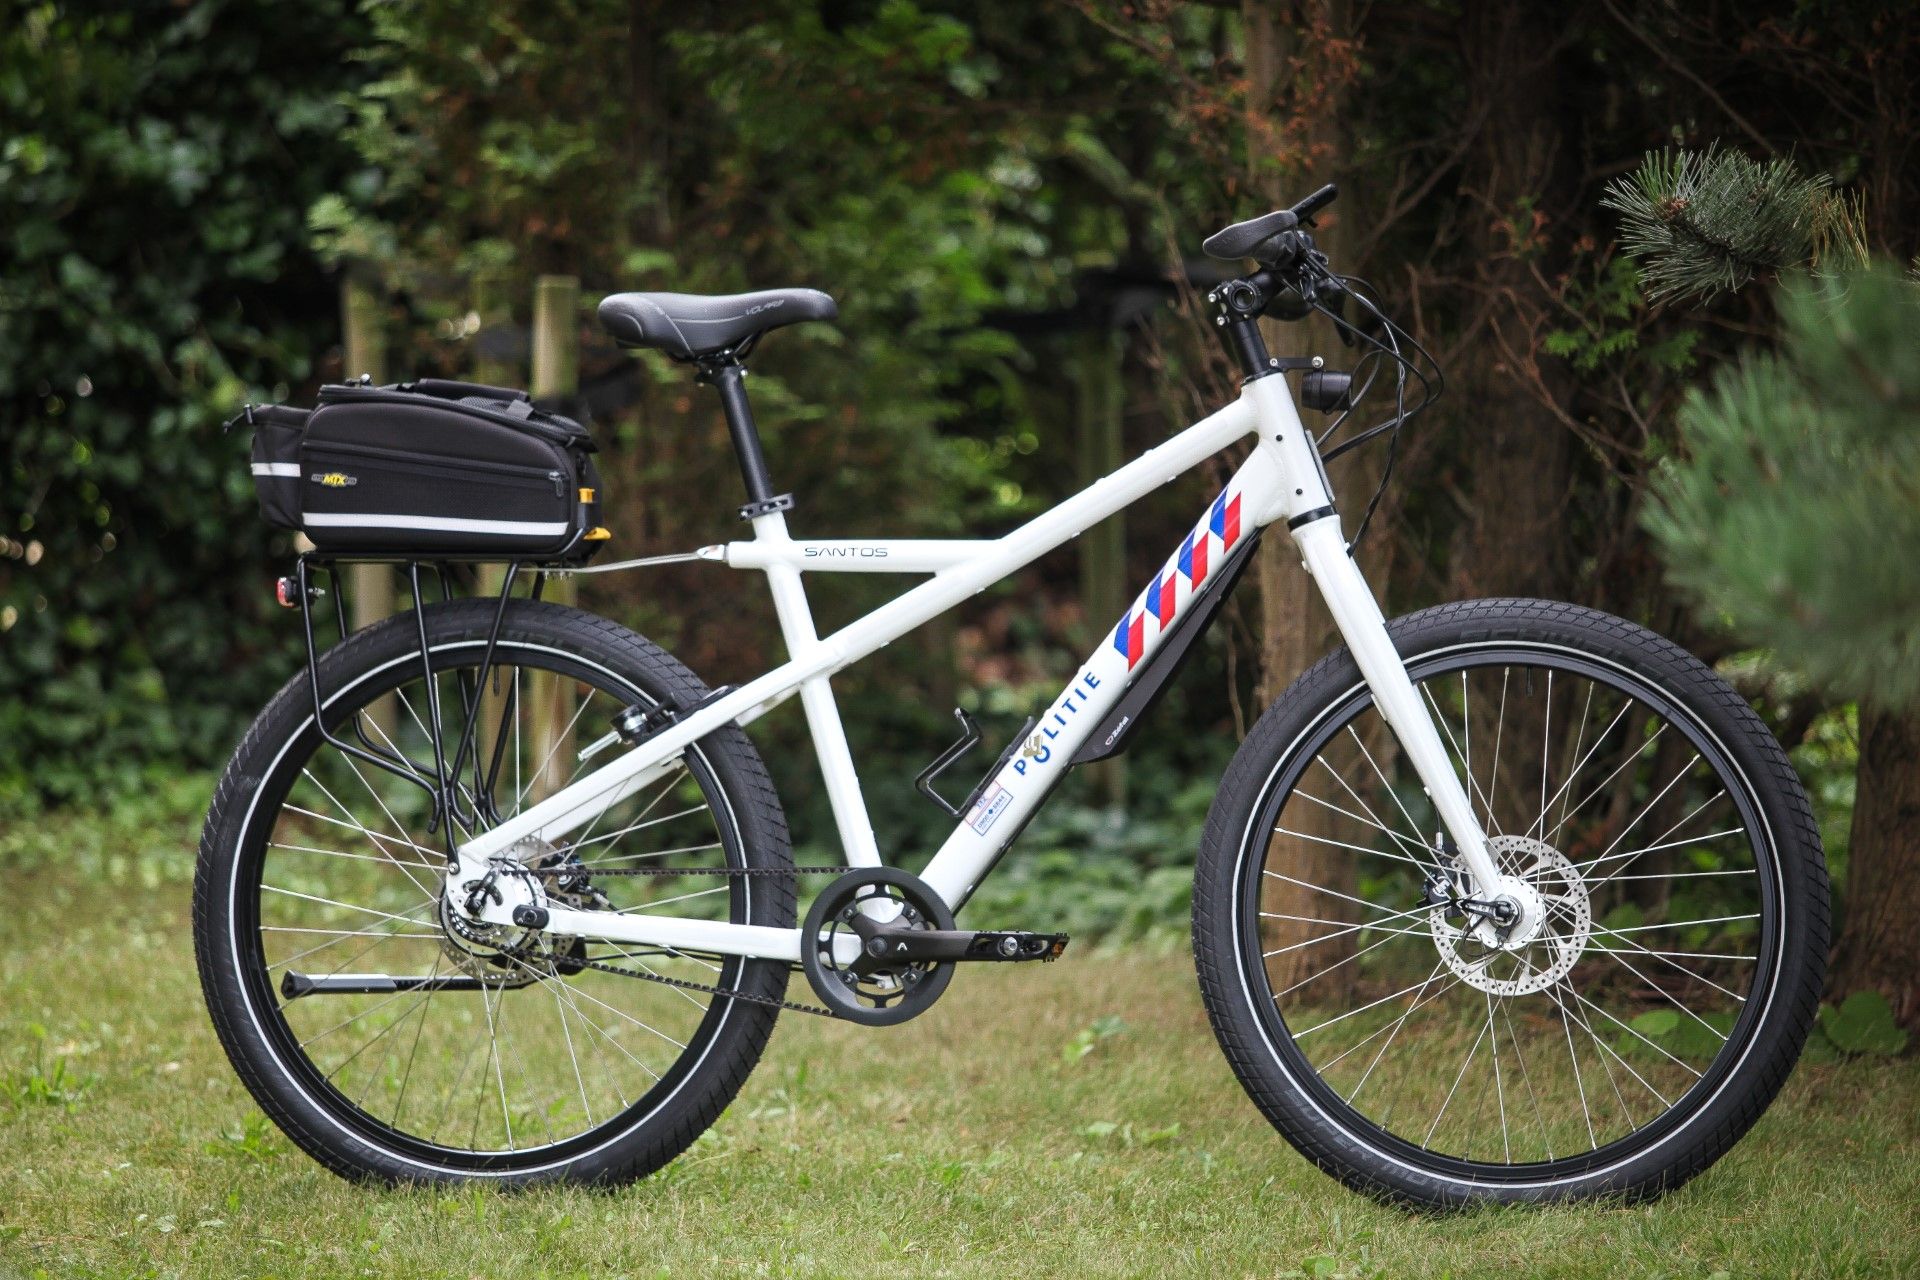 New Santos bike patrol bike for the Dutch police